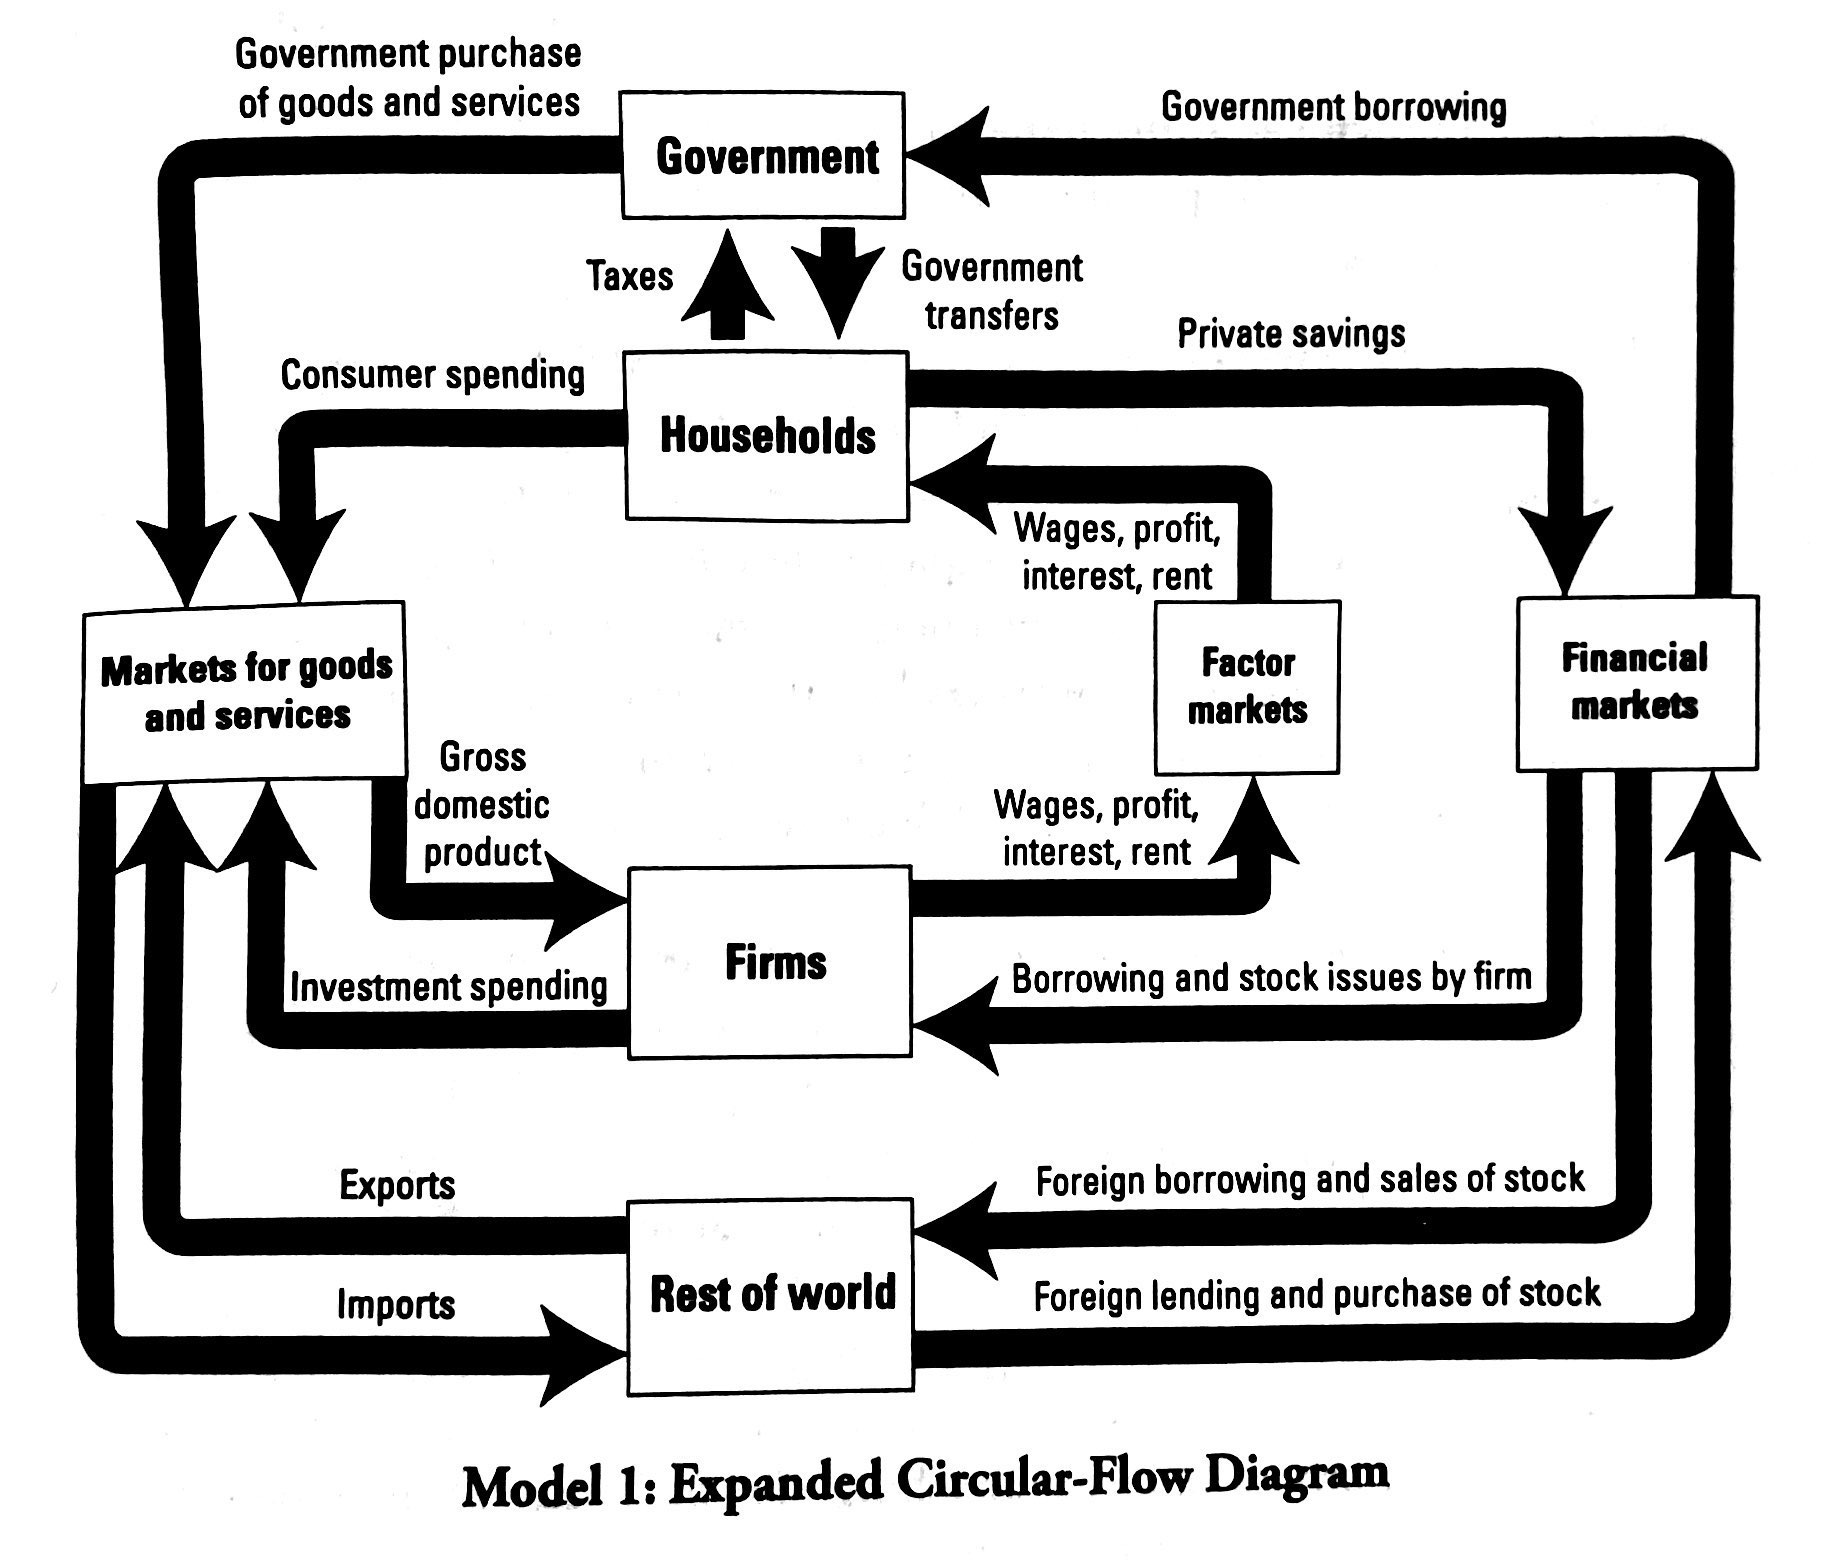 Model 1: Expanded Circular-Flow Diagram